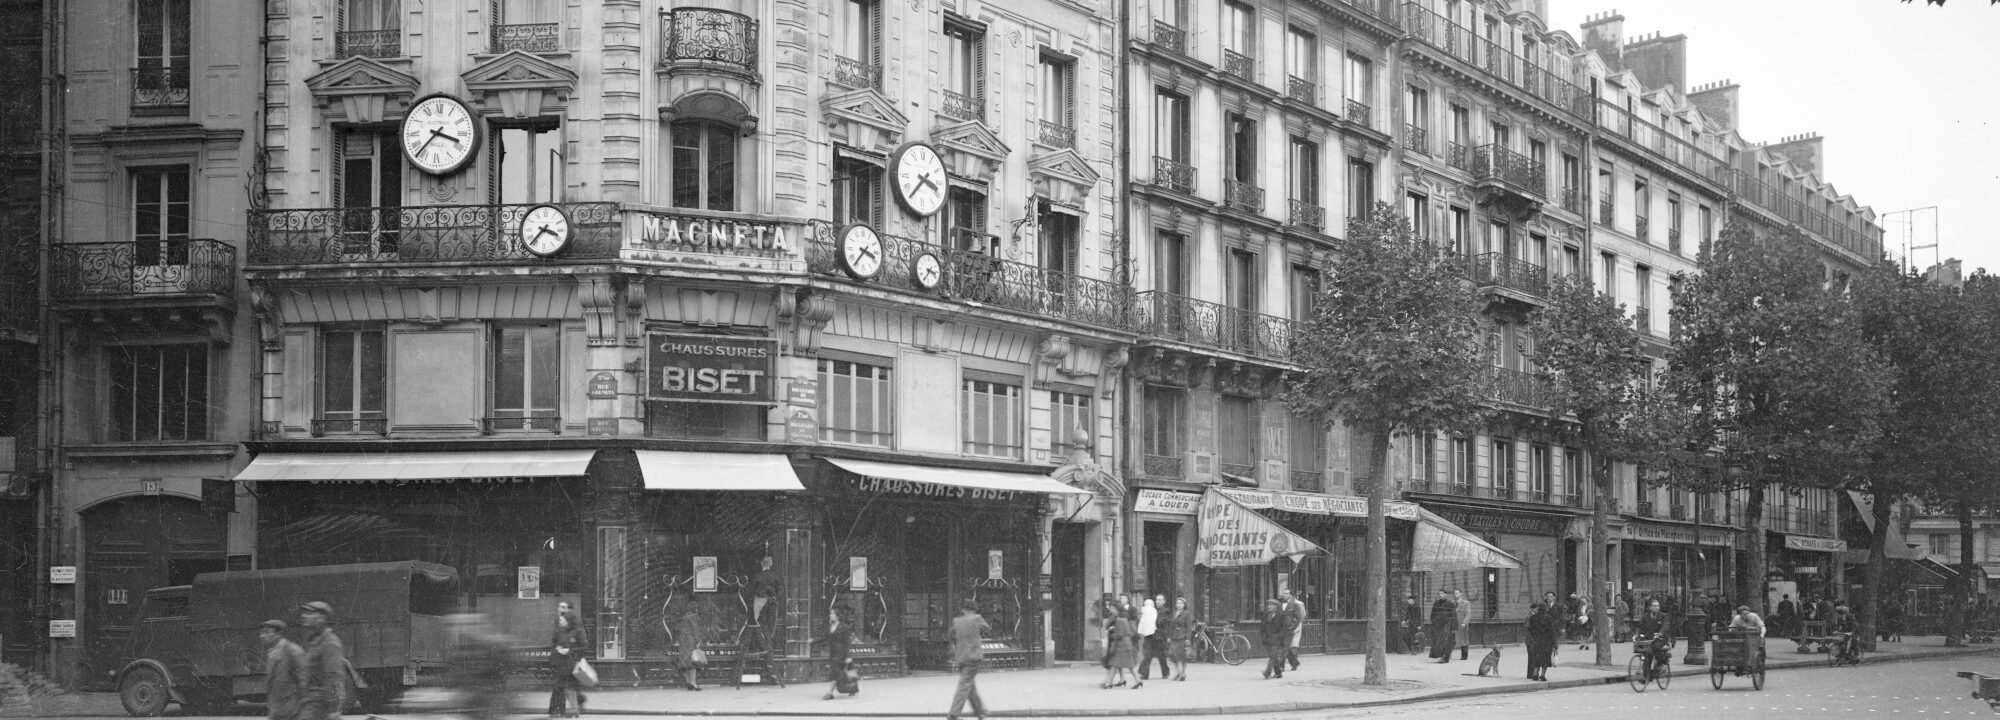 Le retour des Juifs parisiens : ressources et obstacles